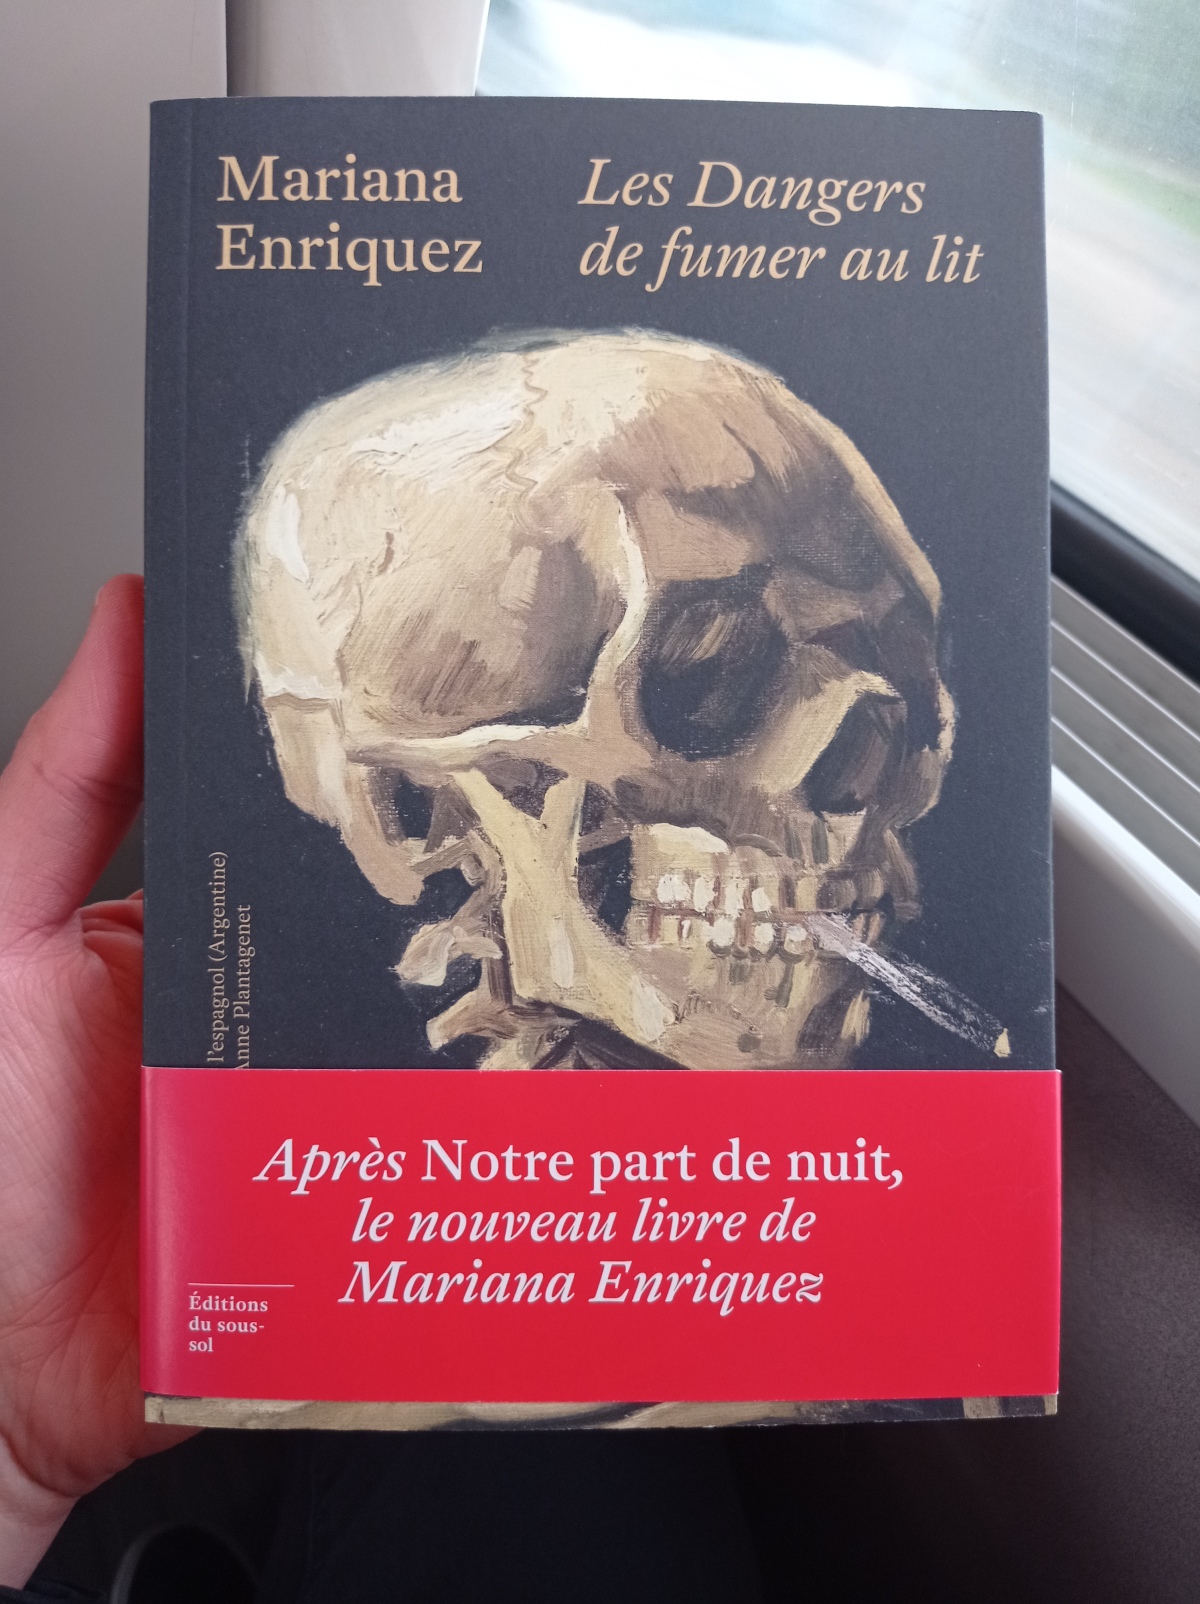 Les Dangers de fumer au lit / Mariana Enriquez